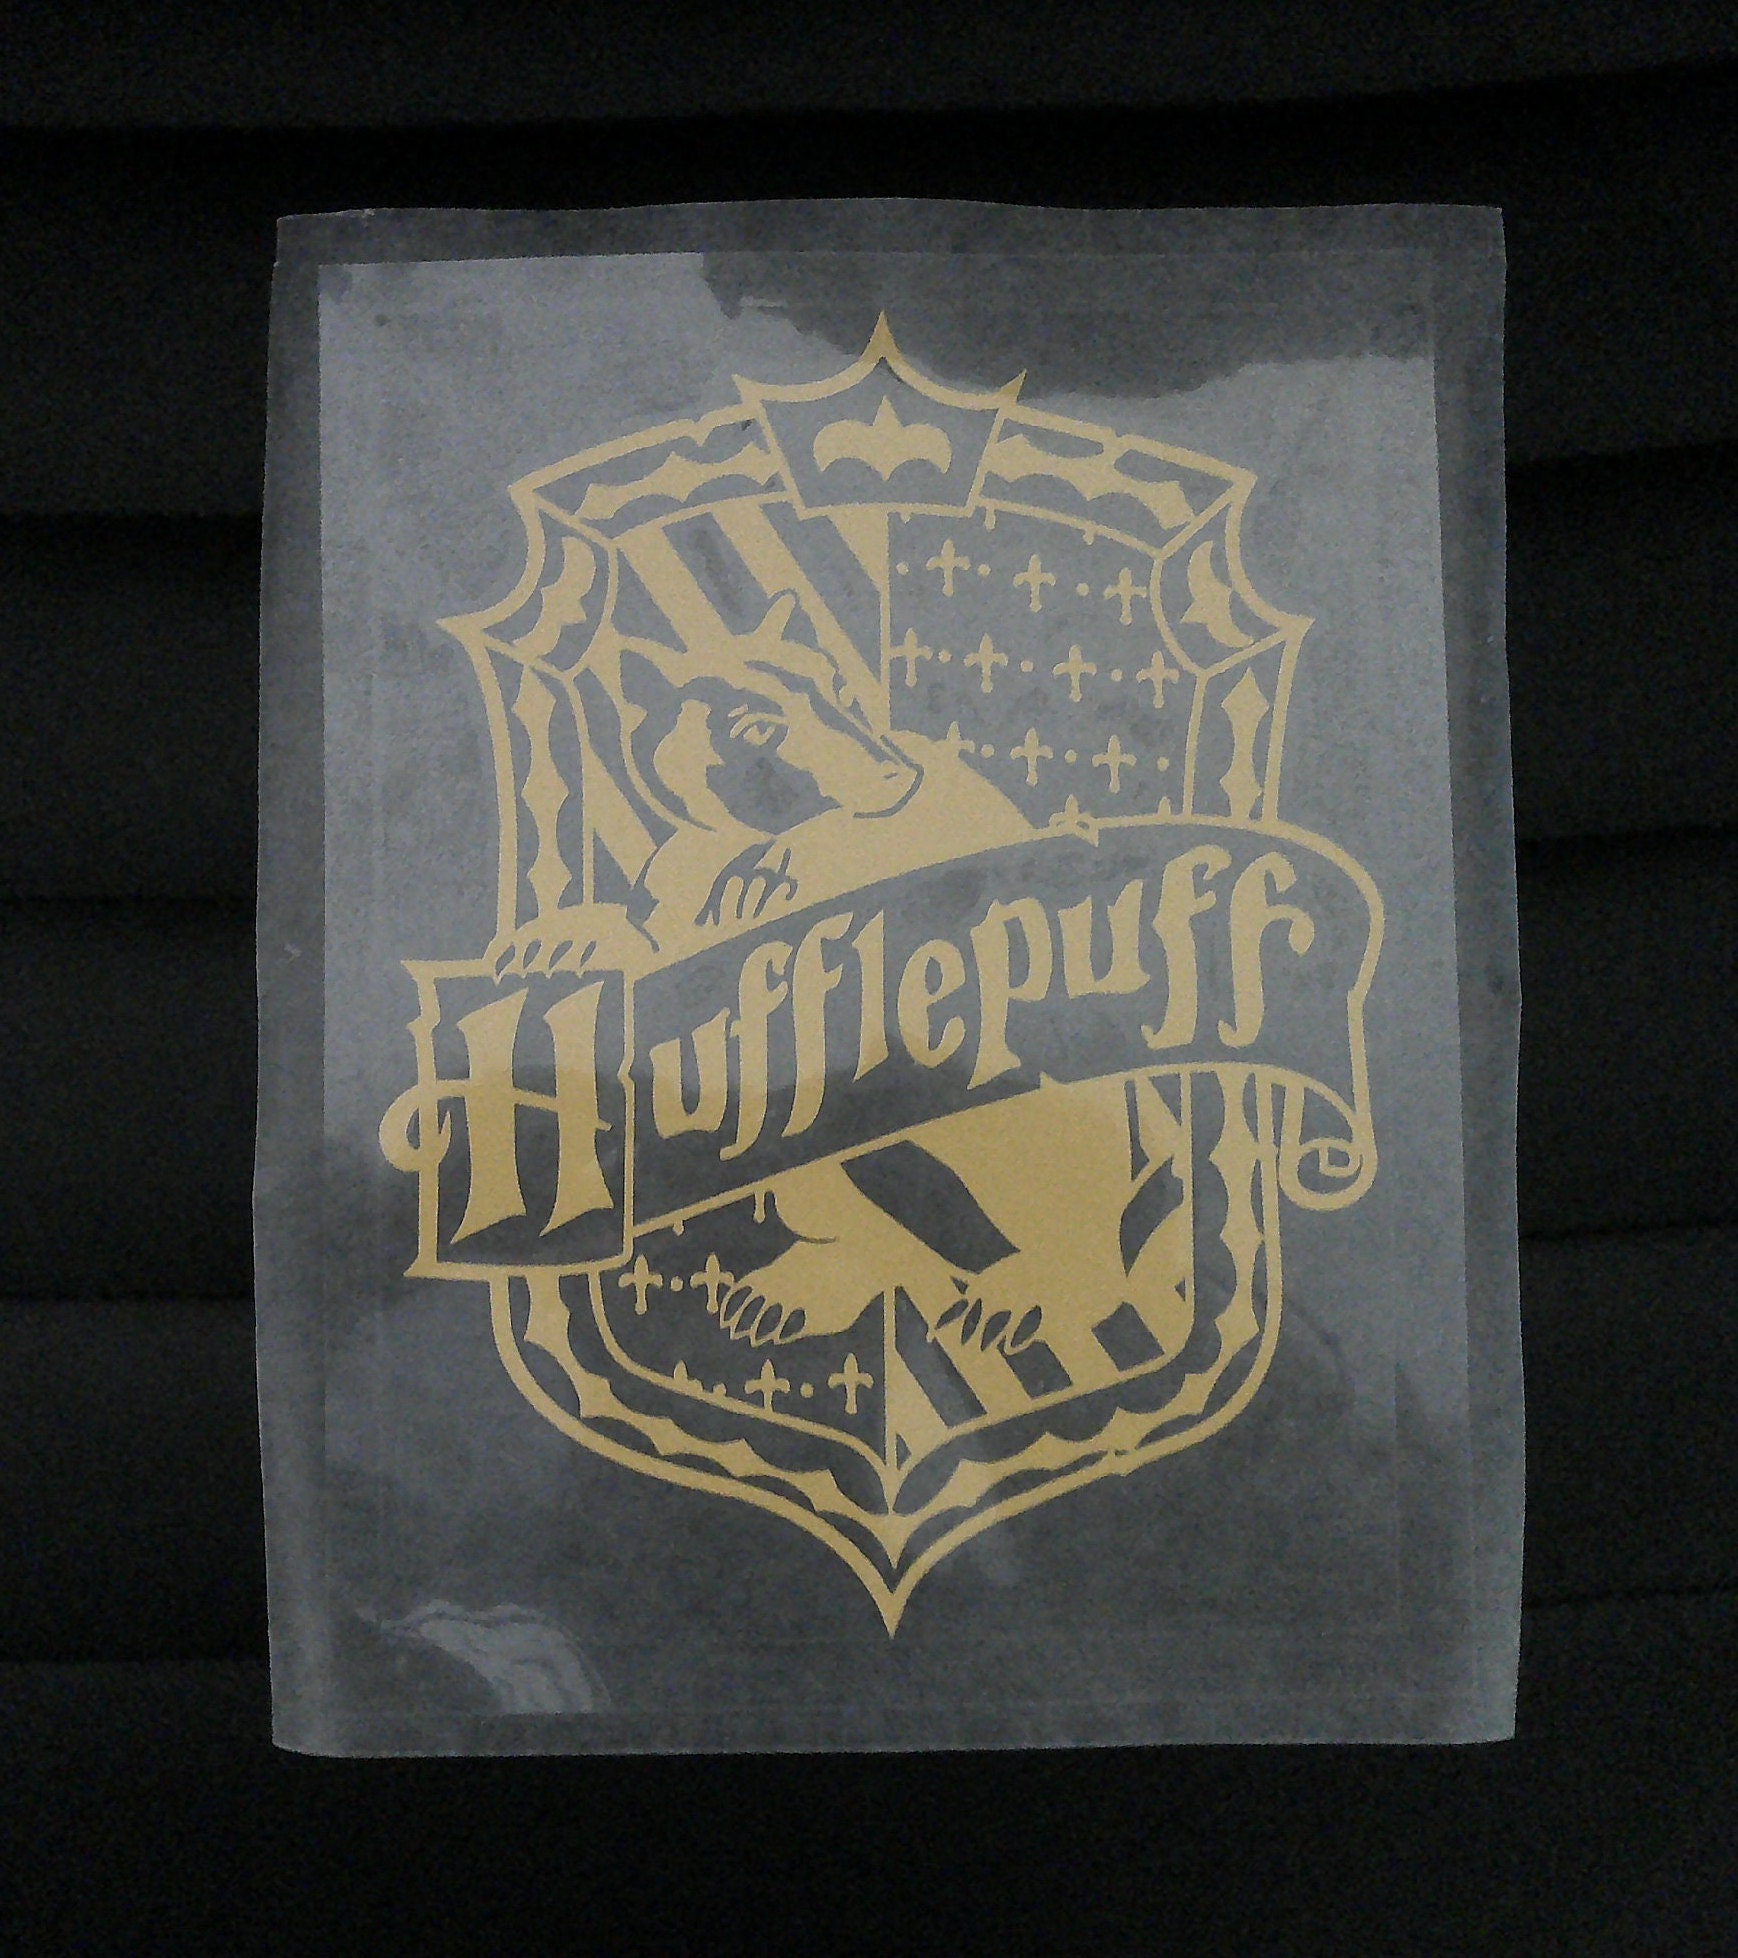 Hogwarts House Crests get a modern makeover - The Hogwarts Crest